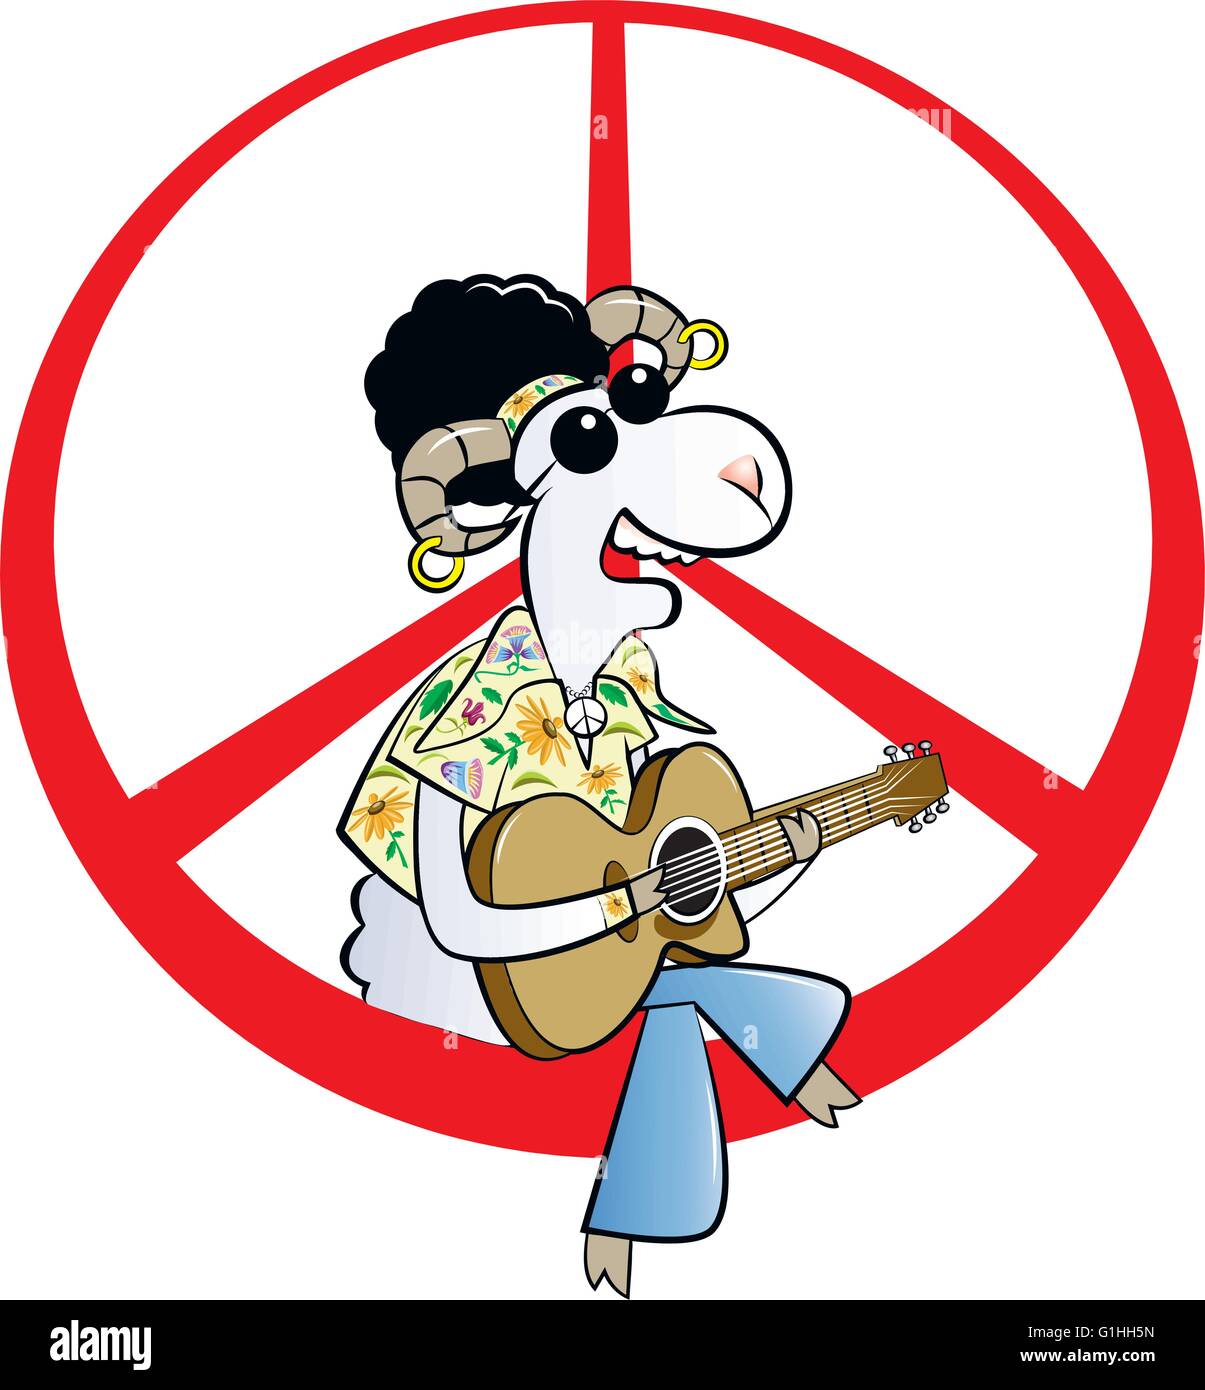 Vektor-Illustration eines Hippie-Ram Charakters sitzen auf Friedenszeichen und Gitarre spielen Stock Vektor